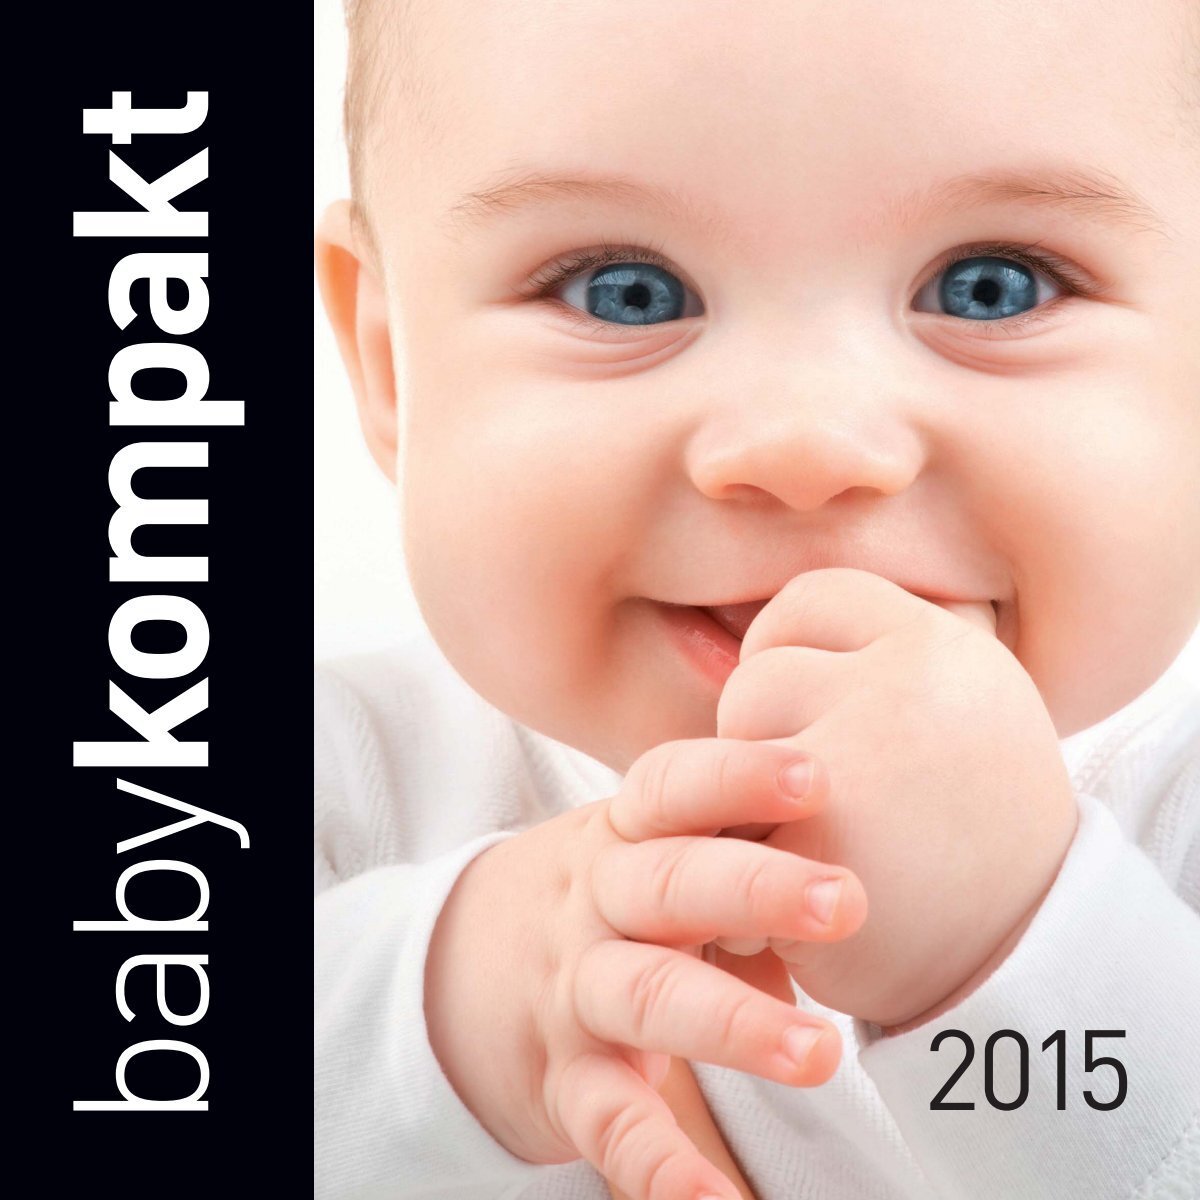 babykompakt 2015 - Produktneuheiten